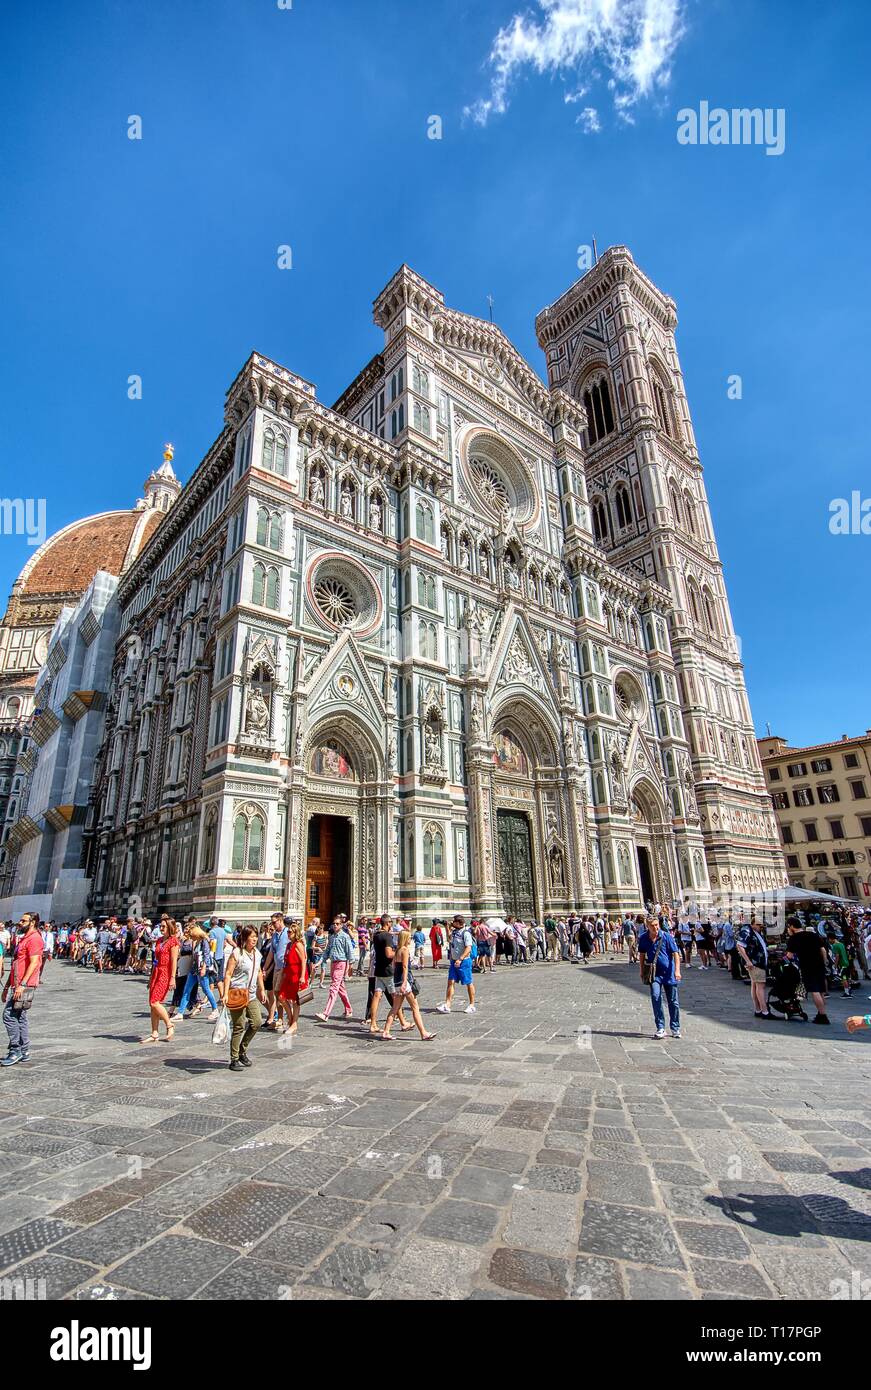 Florence, Italie - 27 juin 2018 : Cathédrale Santa Maria del Fiore, Duomo. Les italiens l'appellent Duomo. Les touristes autour de la cathédrale. Banque D'Images